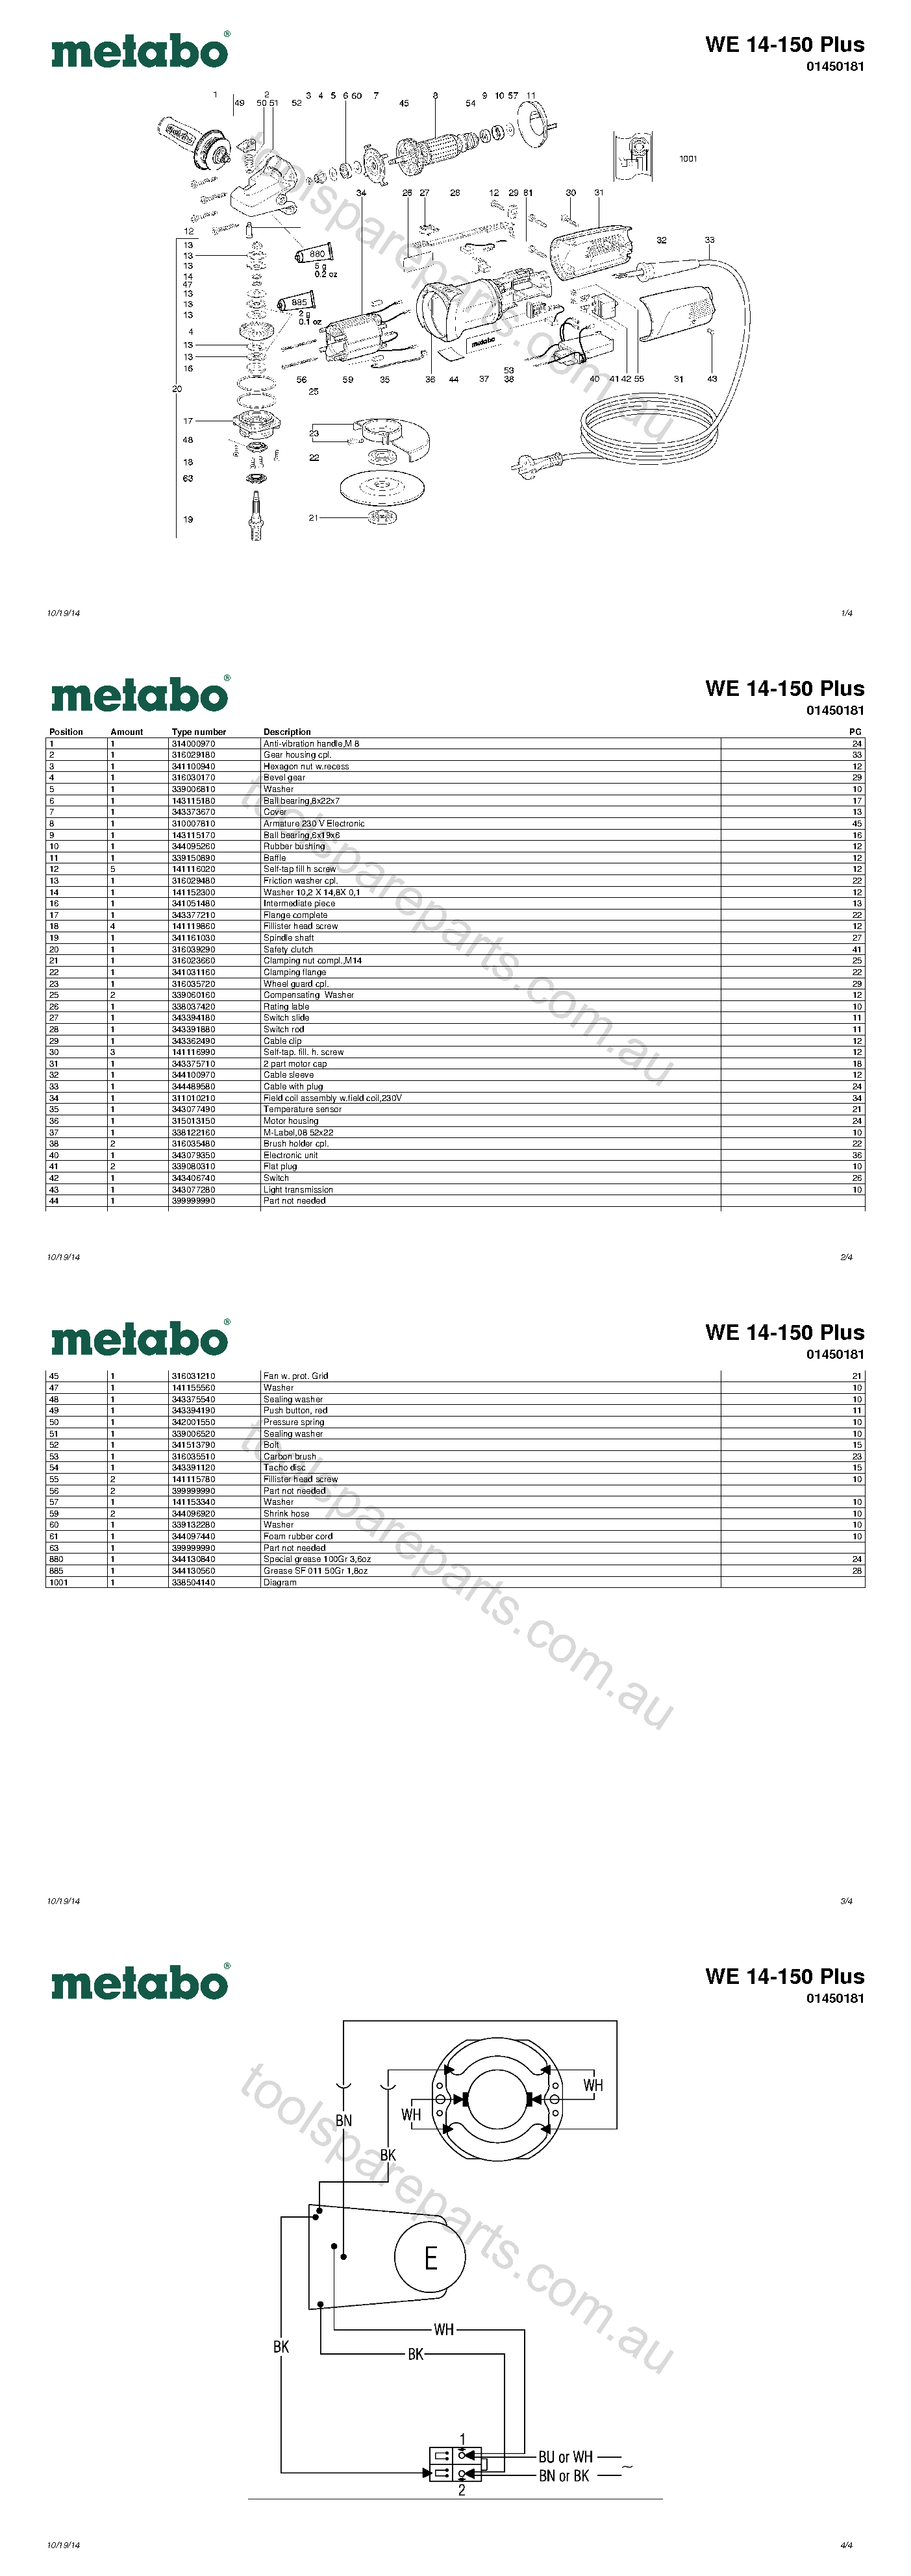 Metabo WE 14-150 Plus 01450181  Diagram 1